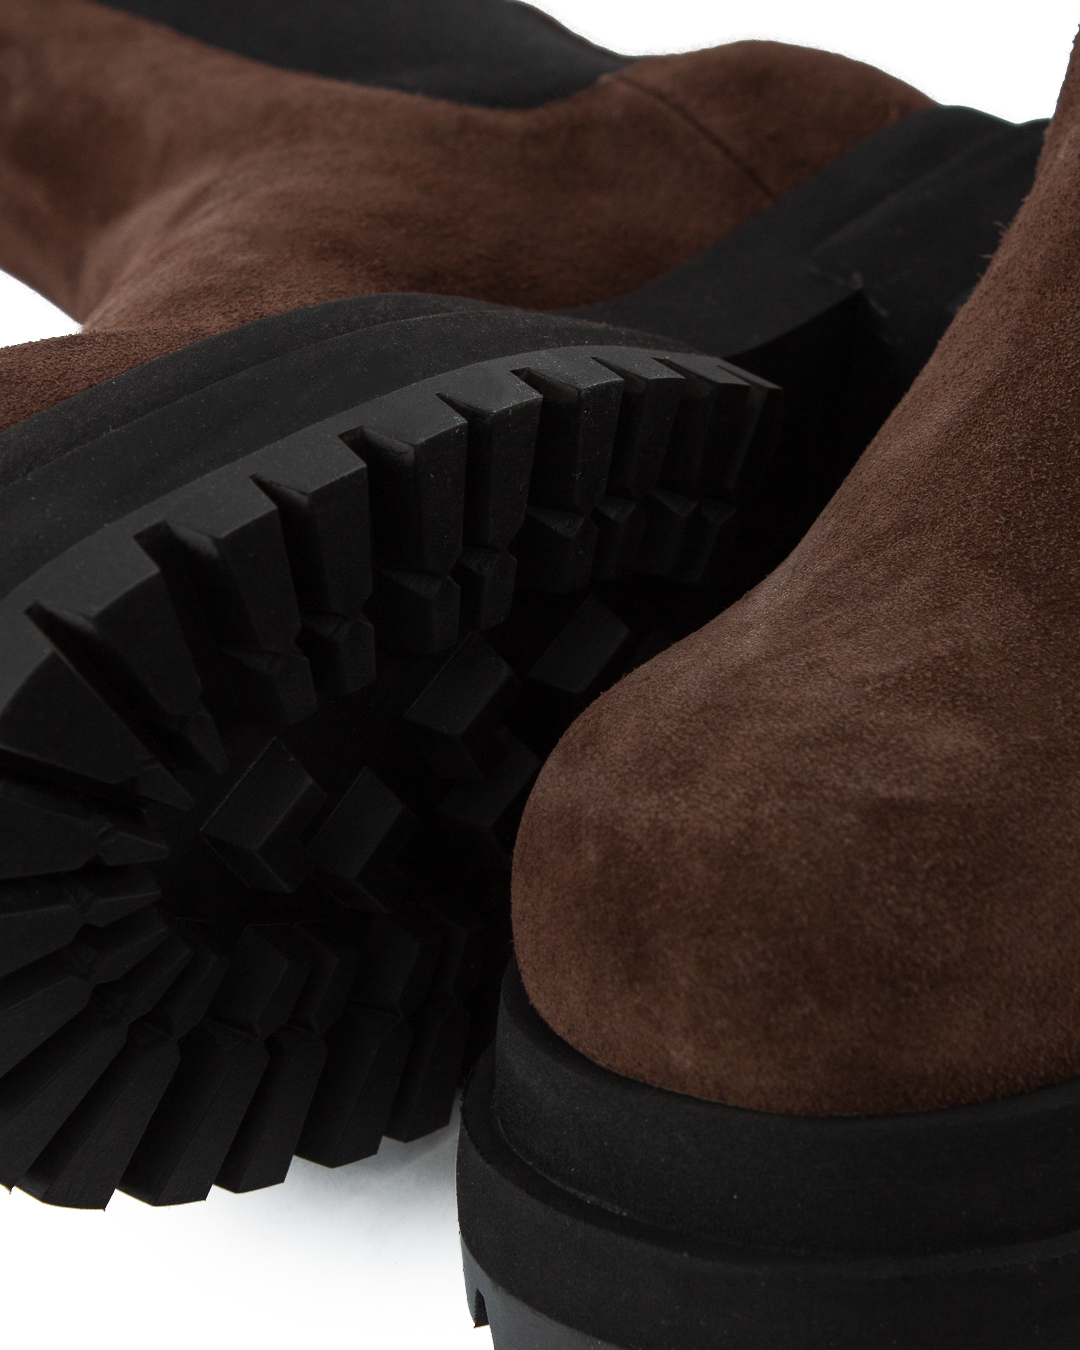 ботинки Maria Luca DL35050A коричневый+черный 39, размер 39, цвет коричневый+черный DL35050A коричневый+черный 39 - фото 3